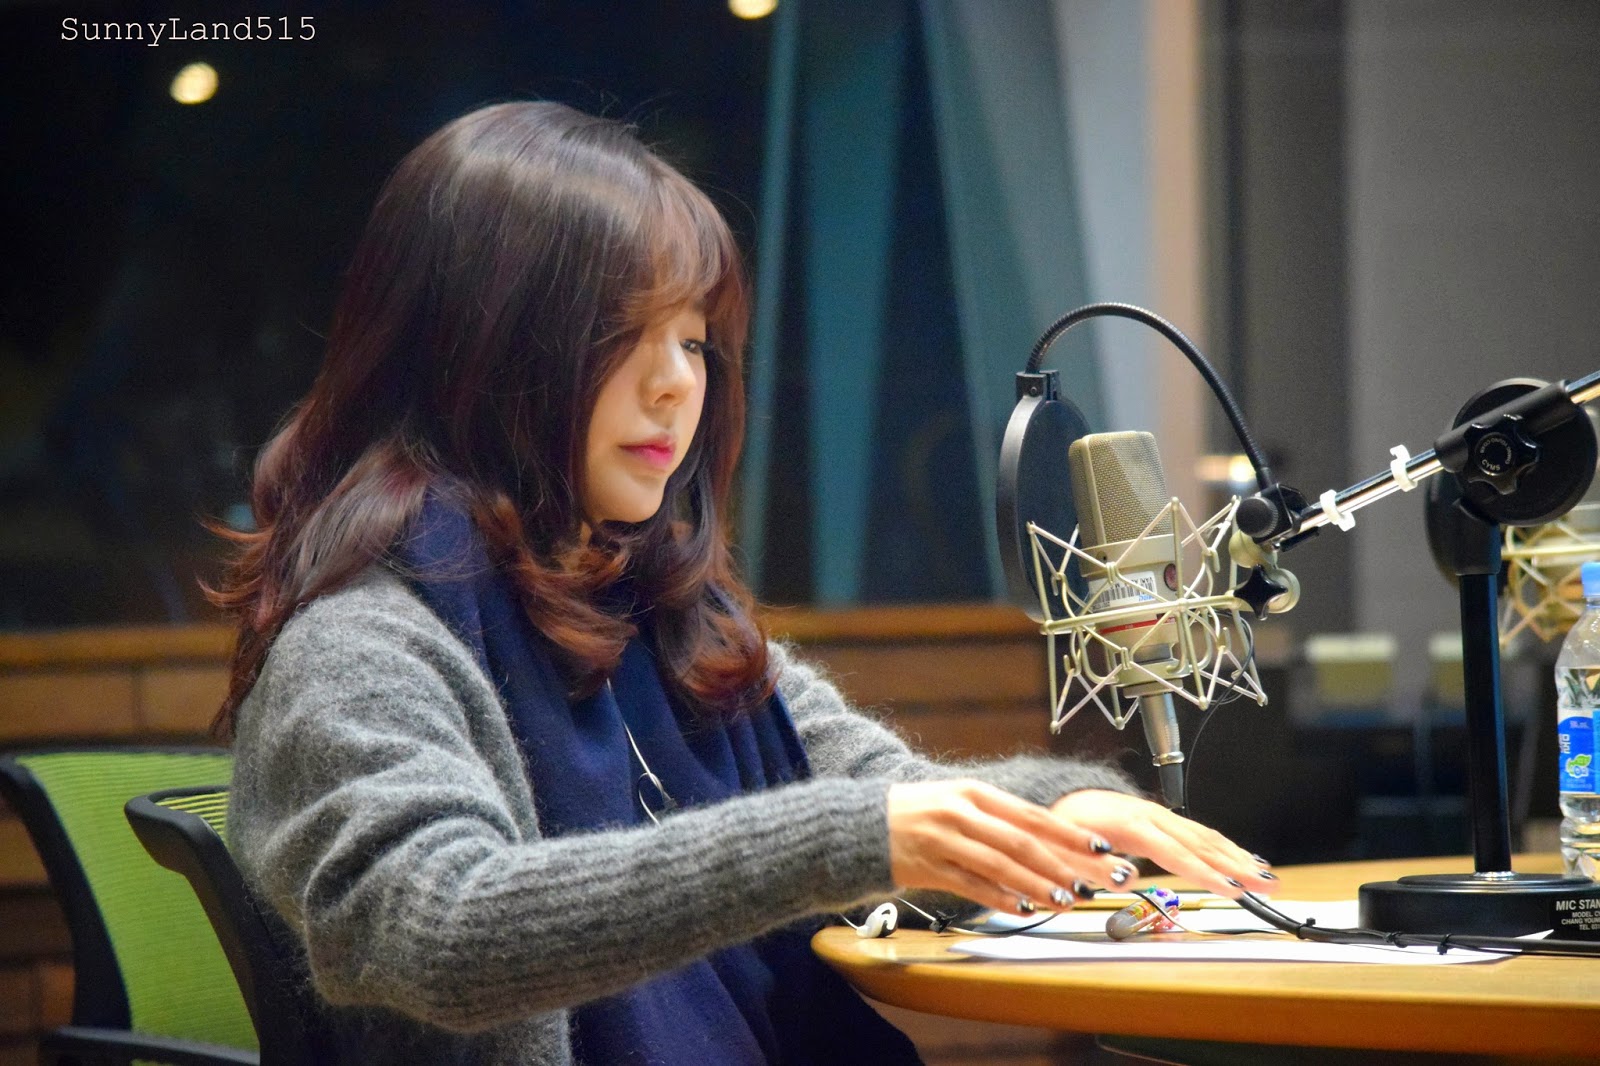 [OTHER][06-02-2015]Hình ảnh mới nhất từ DJ Sunny tại Radio MBC FM4U - "FM Date" - Page 10 DSC_0174_Fotor